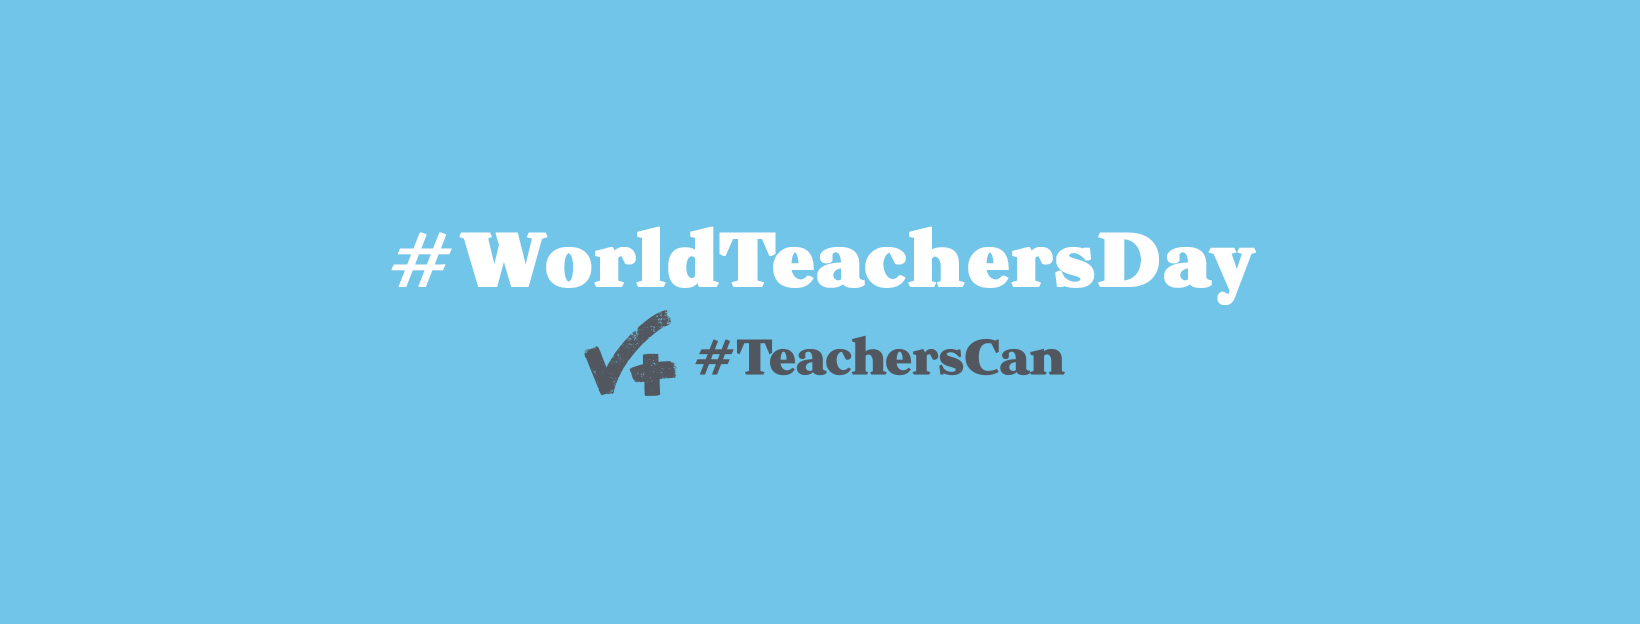 TeachersCan WTD FB Cover_2